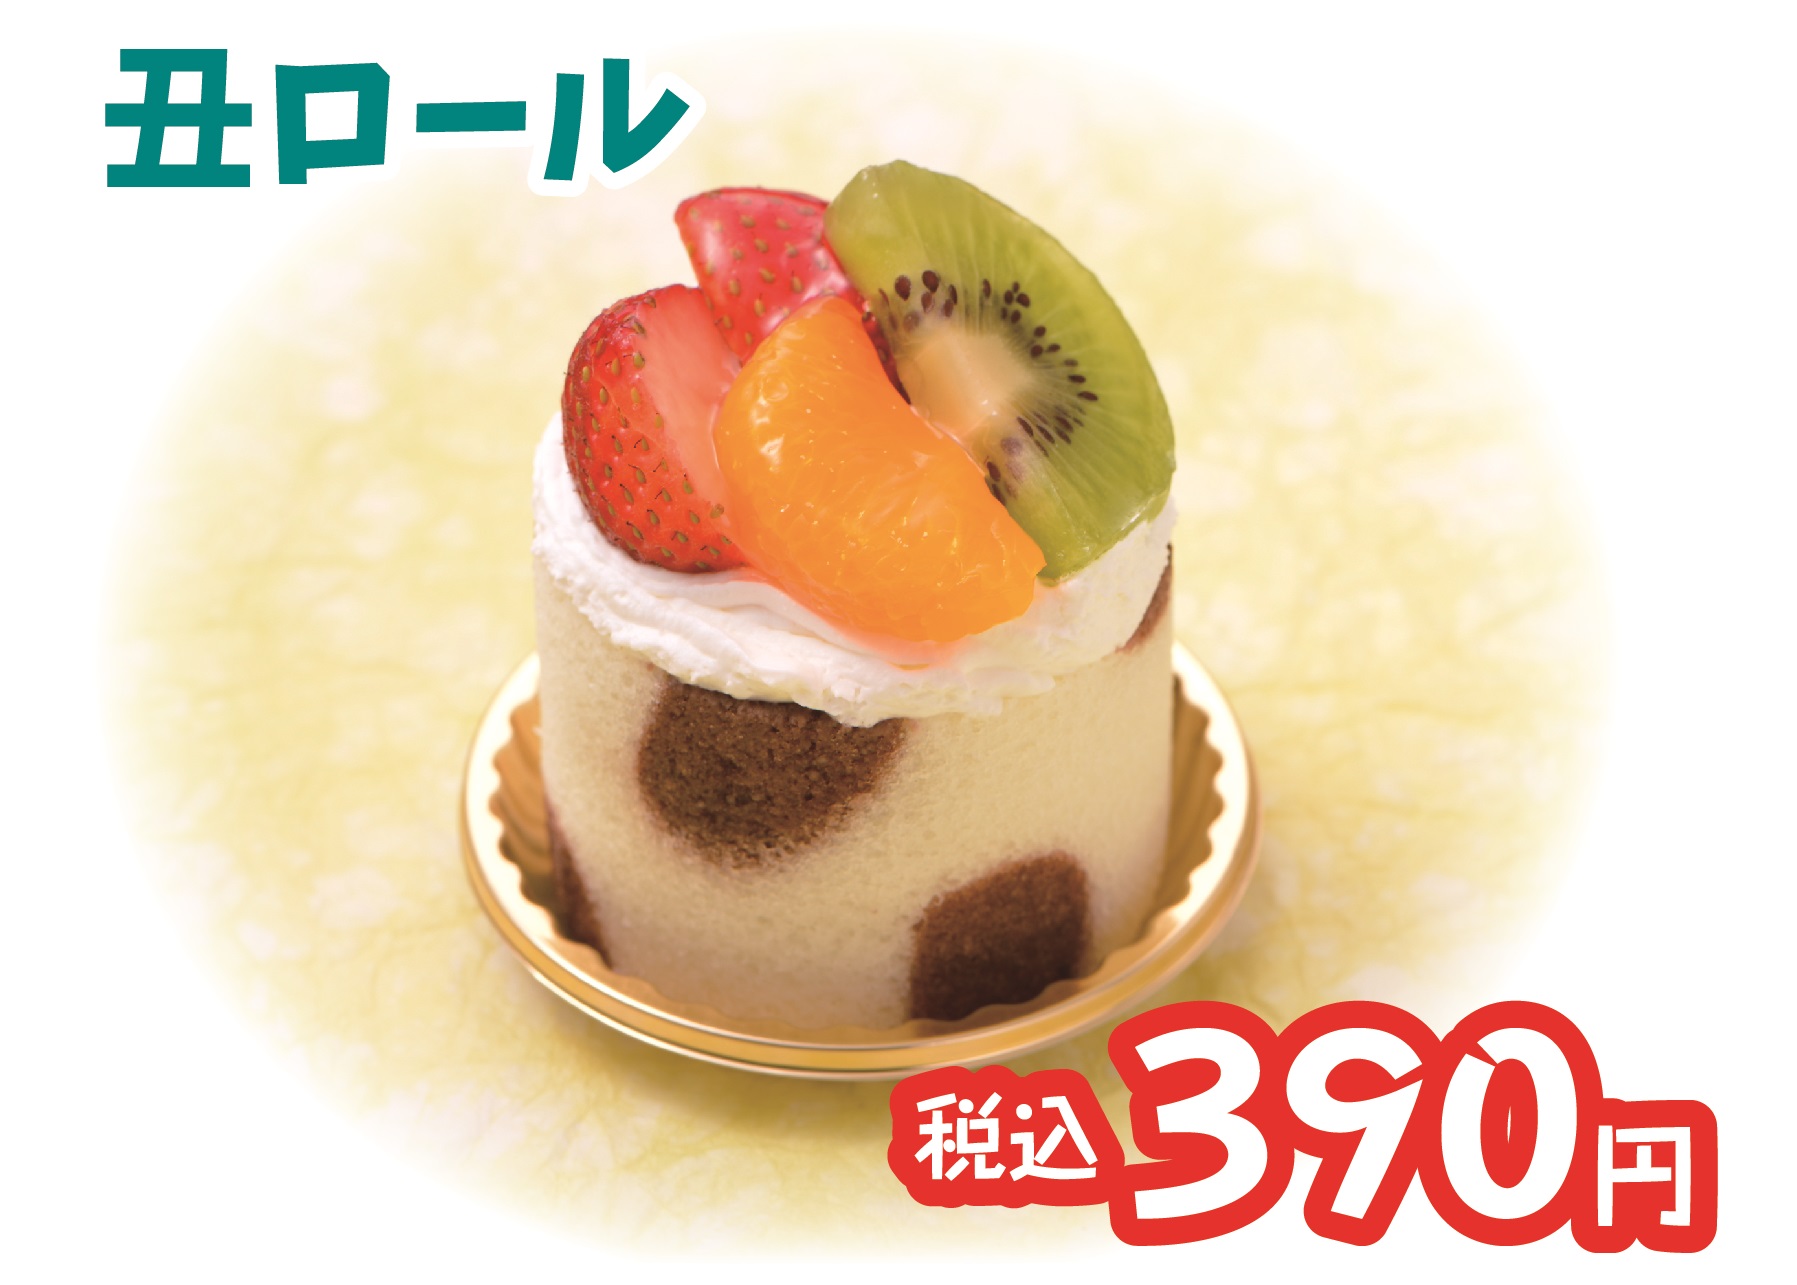 土用丑の日 3種類のケーキを限定販売 Blog 三陸菓匠さいとう 総本店 さいとう製菓